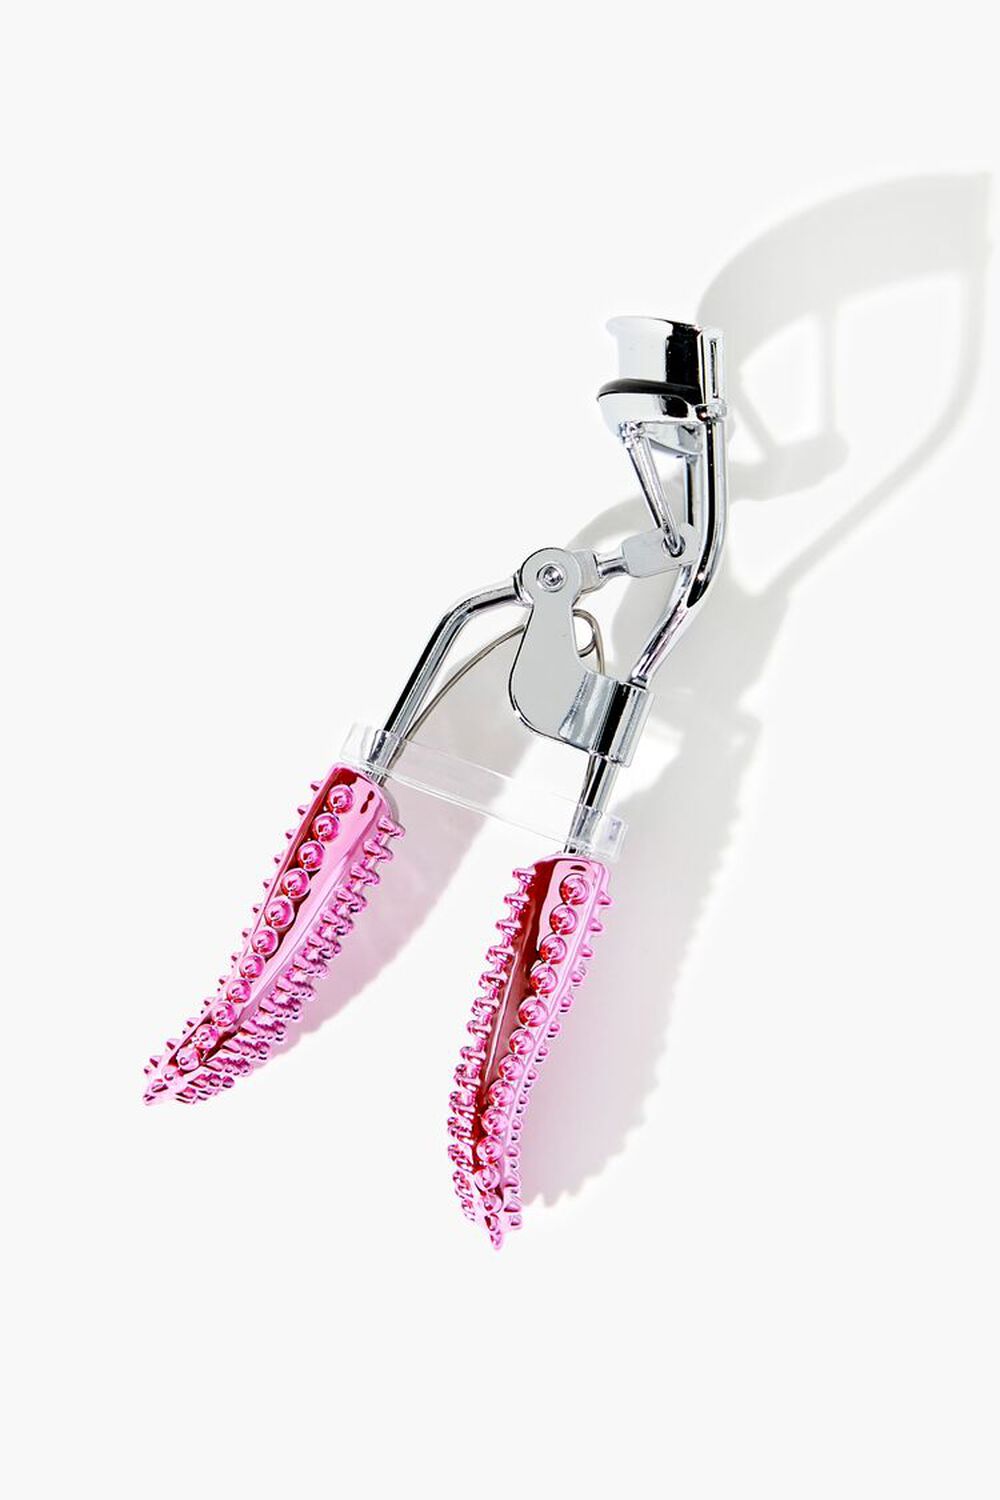 PINK/SILVER Studded Eyelash Curler, image 1